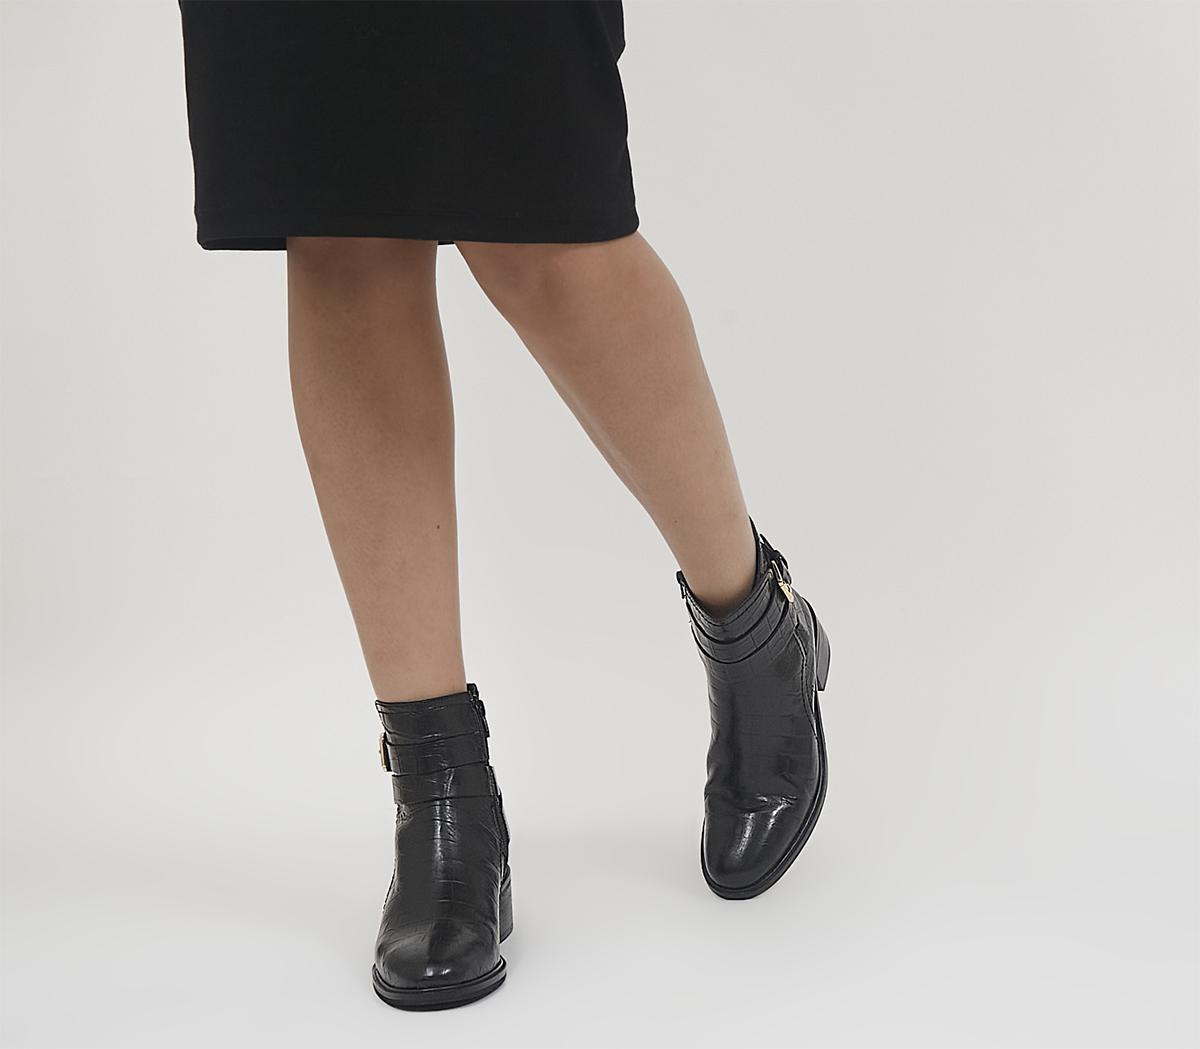 OfficeAtlas Dressy Jodphur Block Heeled Ankle BootsBlack Croc Leather